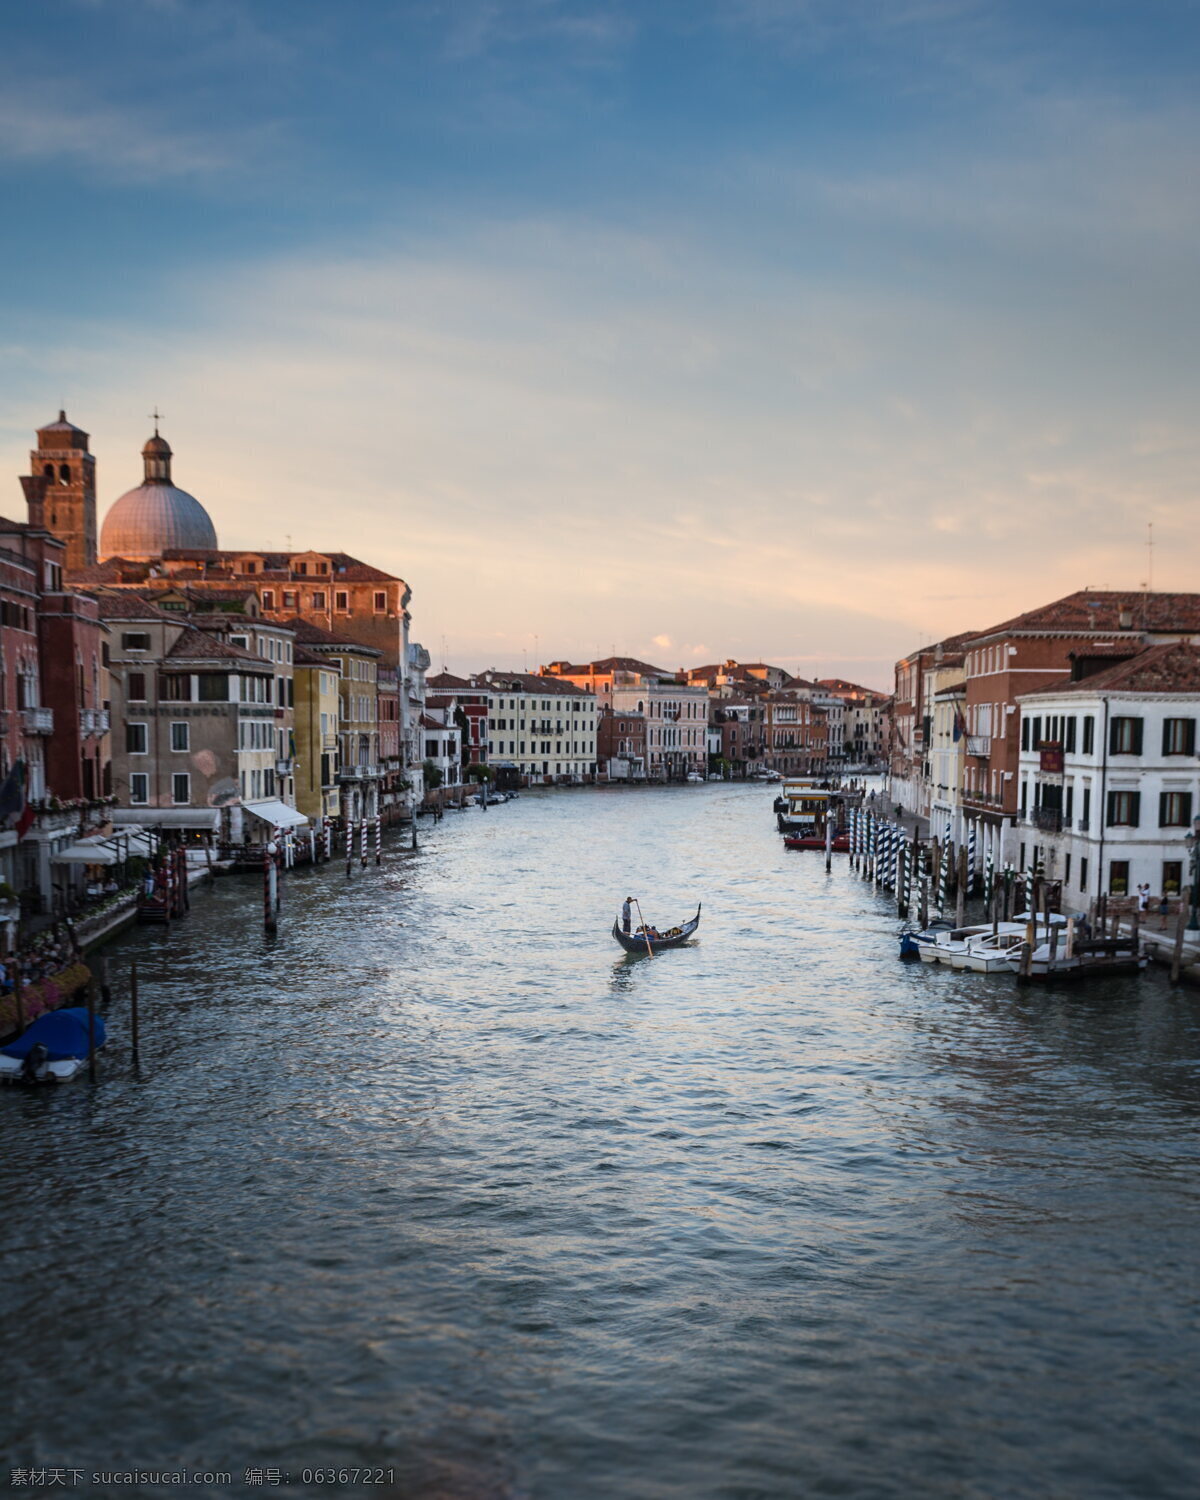 威尼斯 水城 风景 威尼斯风景 水城风景 百岛城 桥城 水上都市 水上城市 特色建筑 城市景观 建筑园林 建筑摄影